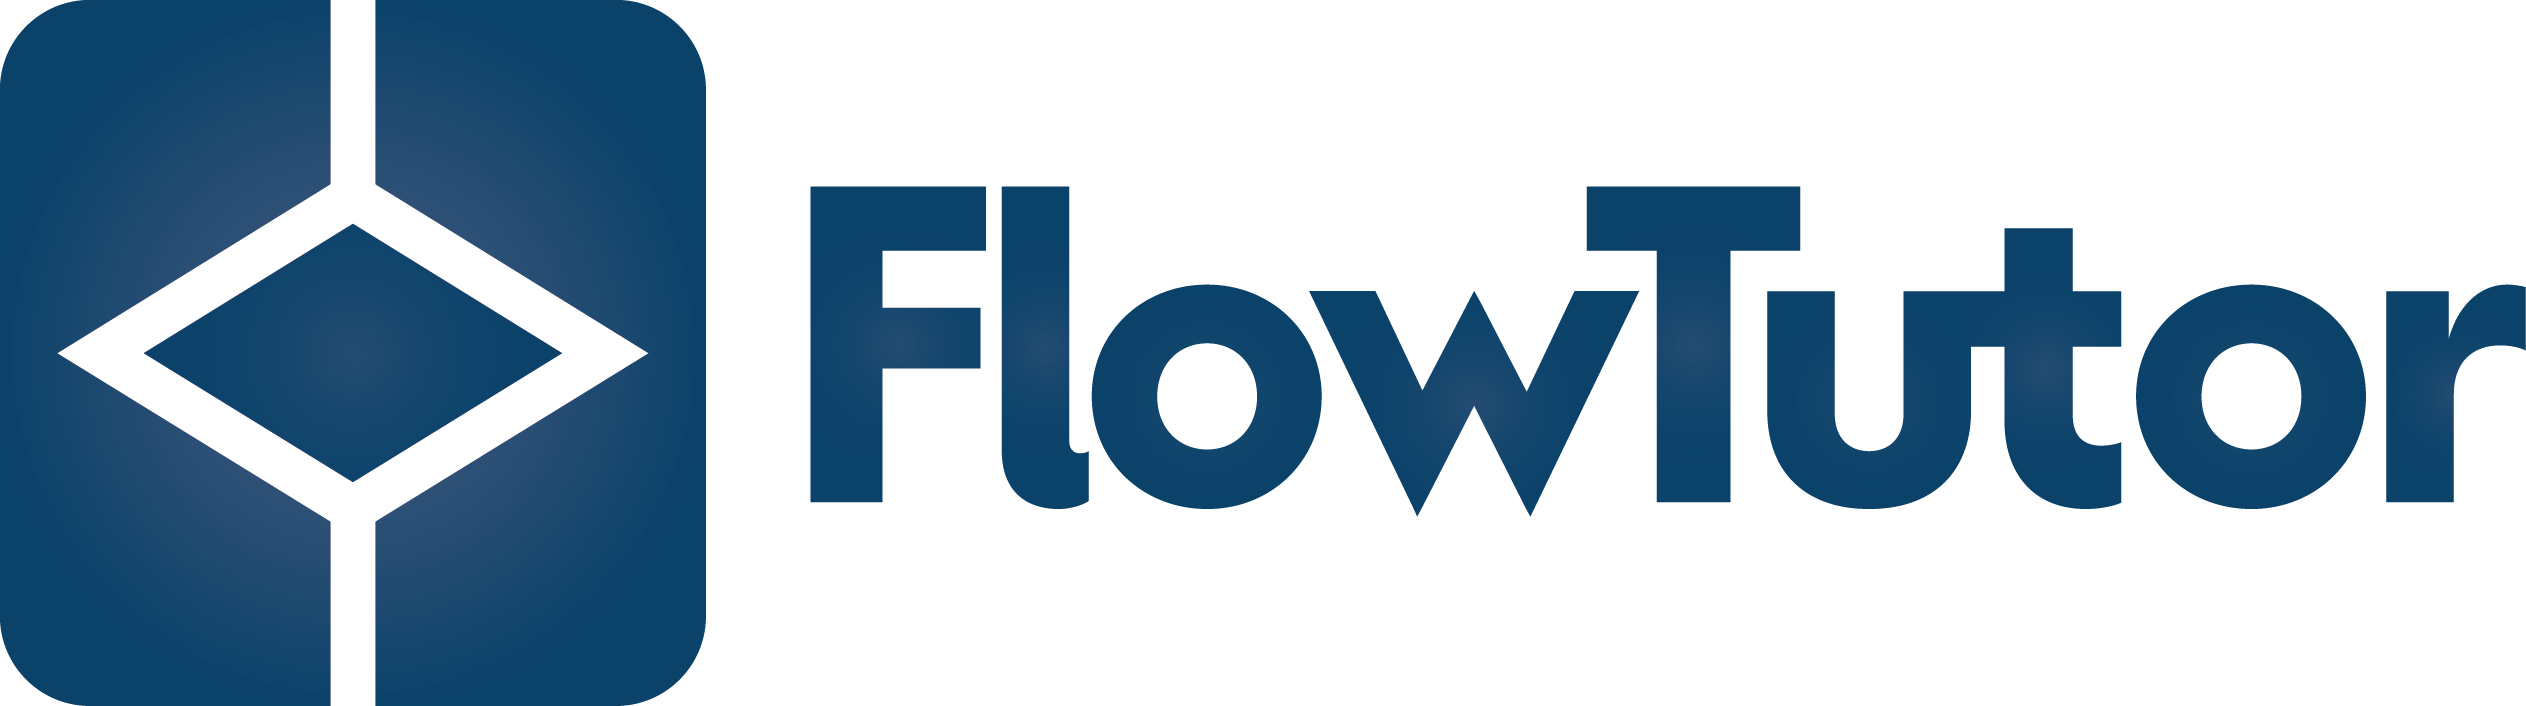 flowtutor-logo